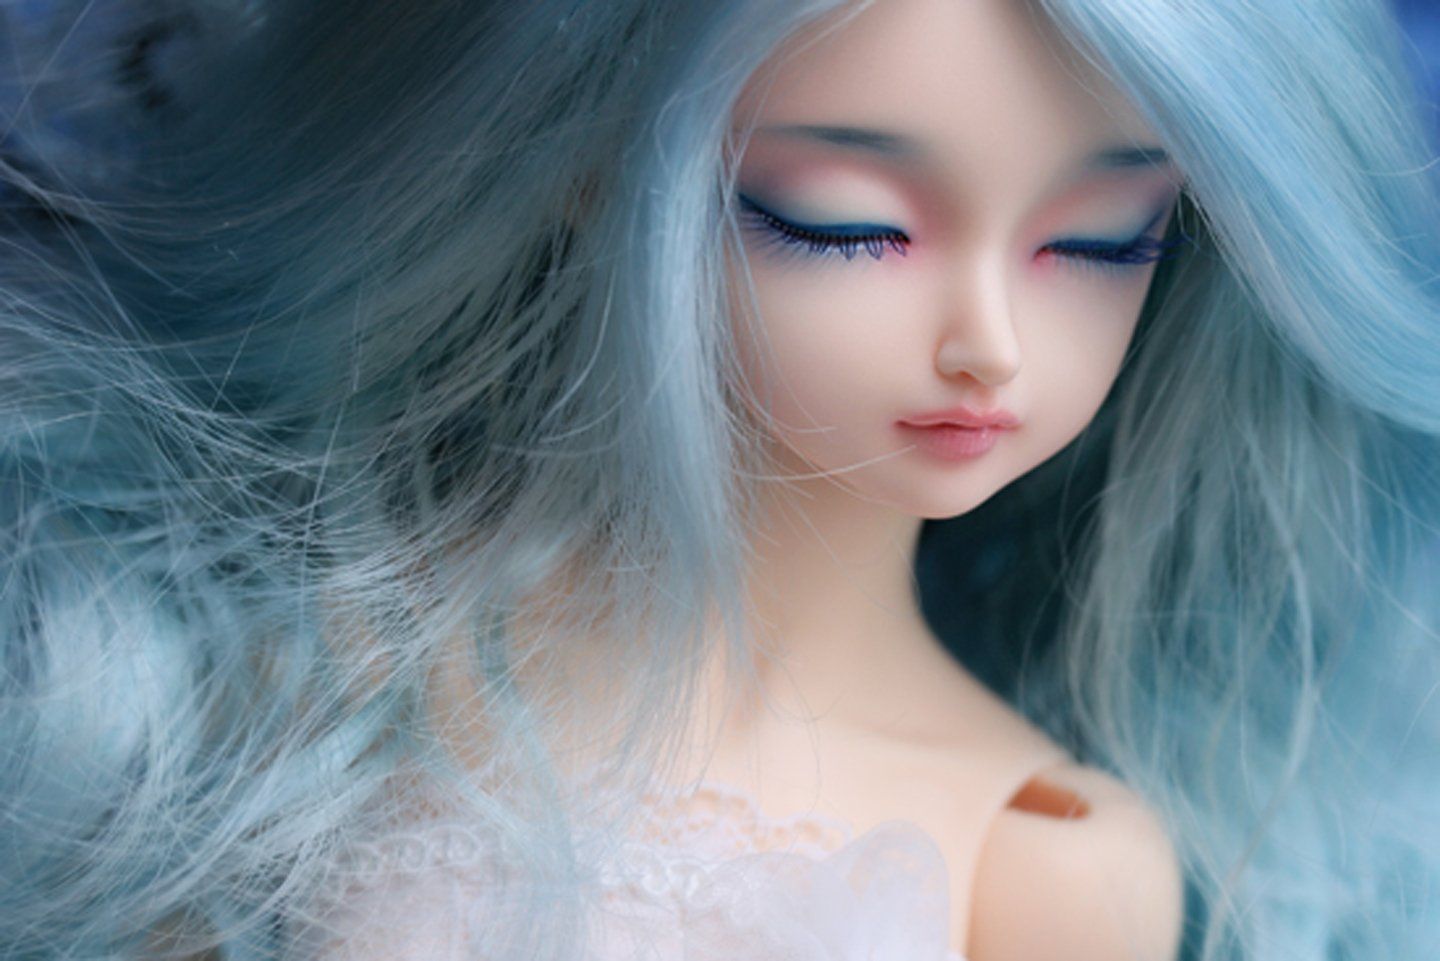 Doll toys long hair girl beauty sleep cute blue wallpaperx961